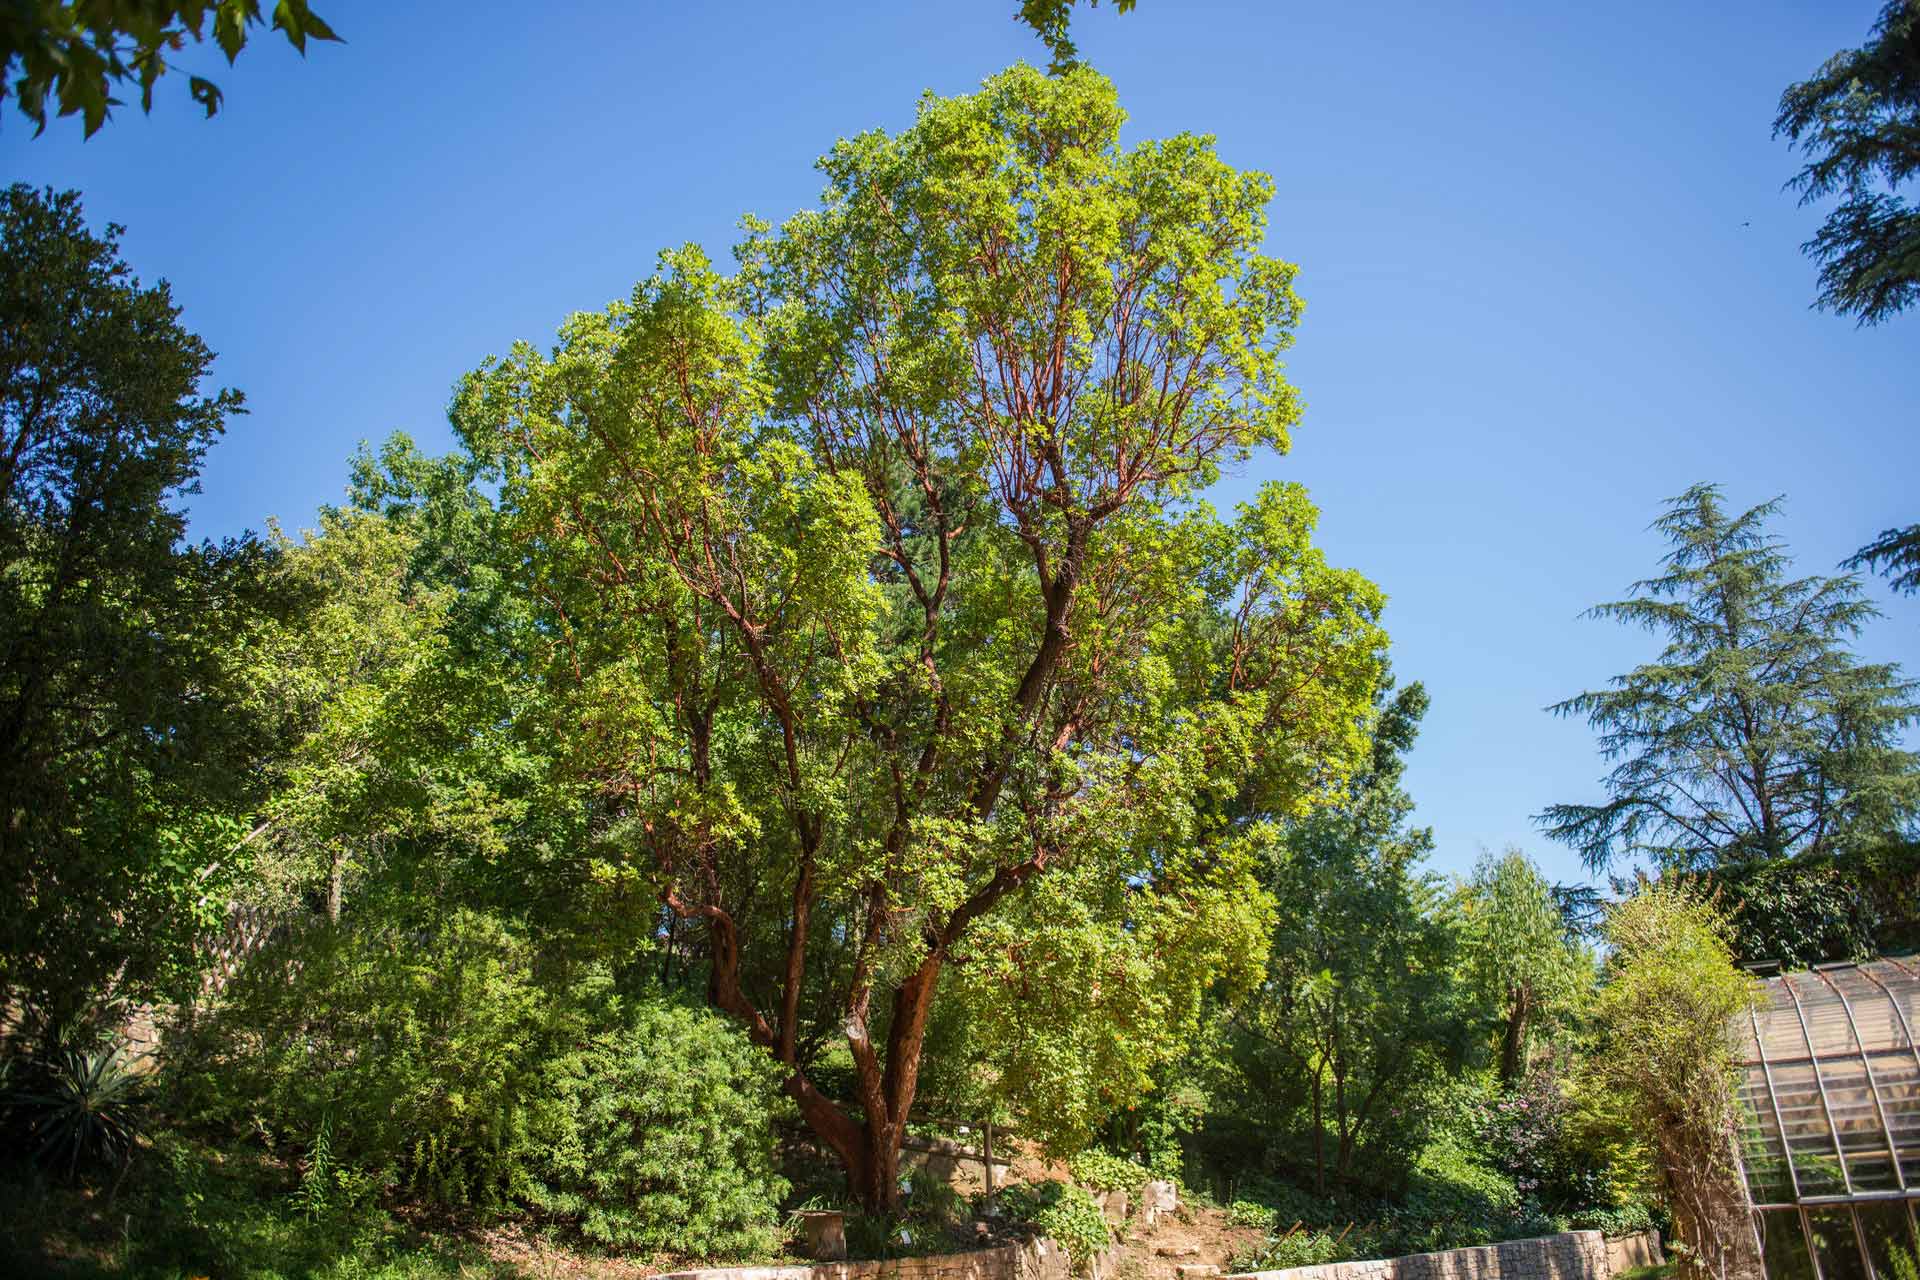 Les 8000 arbres présents sur le domaine public d’Alès sont scrutés de près afin de ne pas mettre en danger les personnes ou les ouvrages.